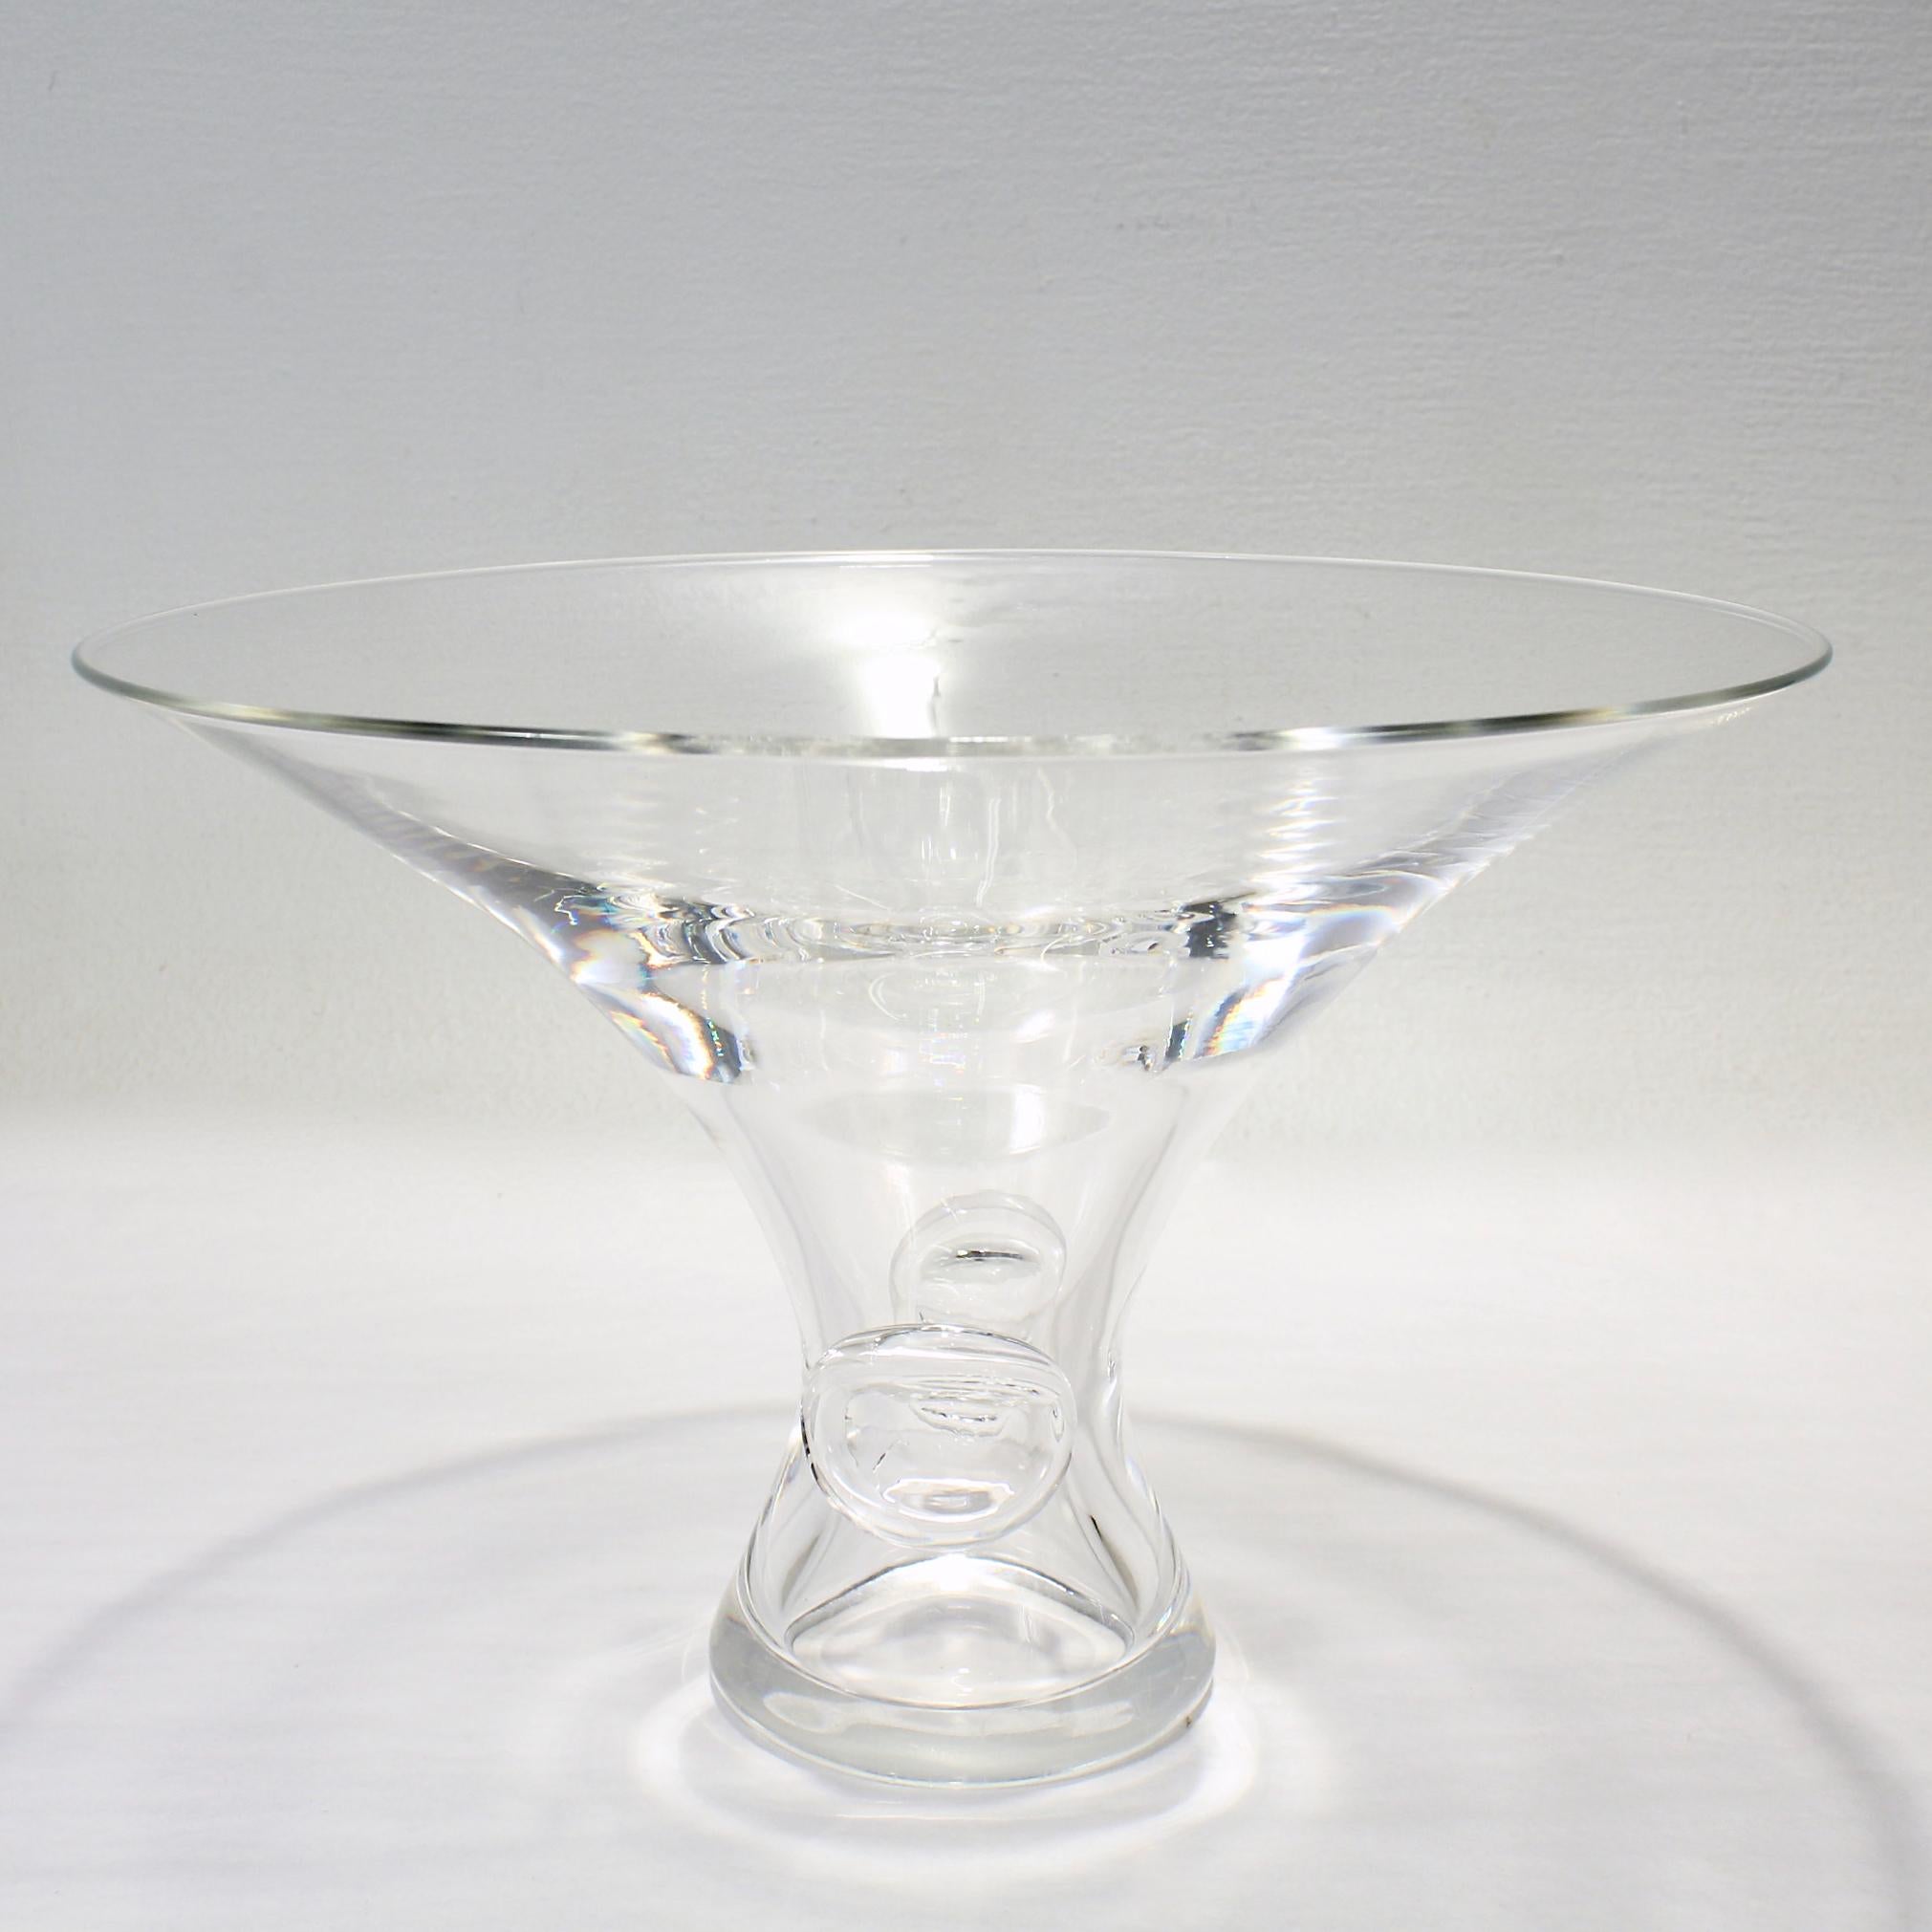 Vase en verre 'Bouquet' de grande taille.

Par Steuben Glassworks.

Conçu par George Thompson.

Modèle n° 7985

Le vase en forme de trompette présente deux prunelles ovales surélevées sur les côtés opposés. 

Tout simplement une superbe